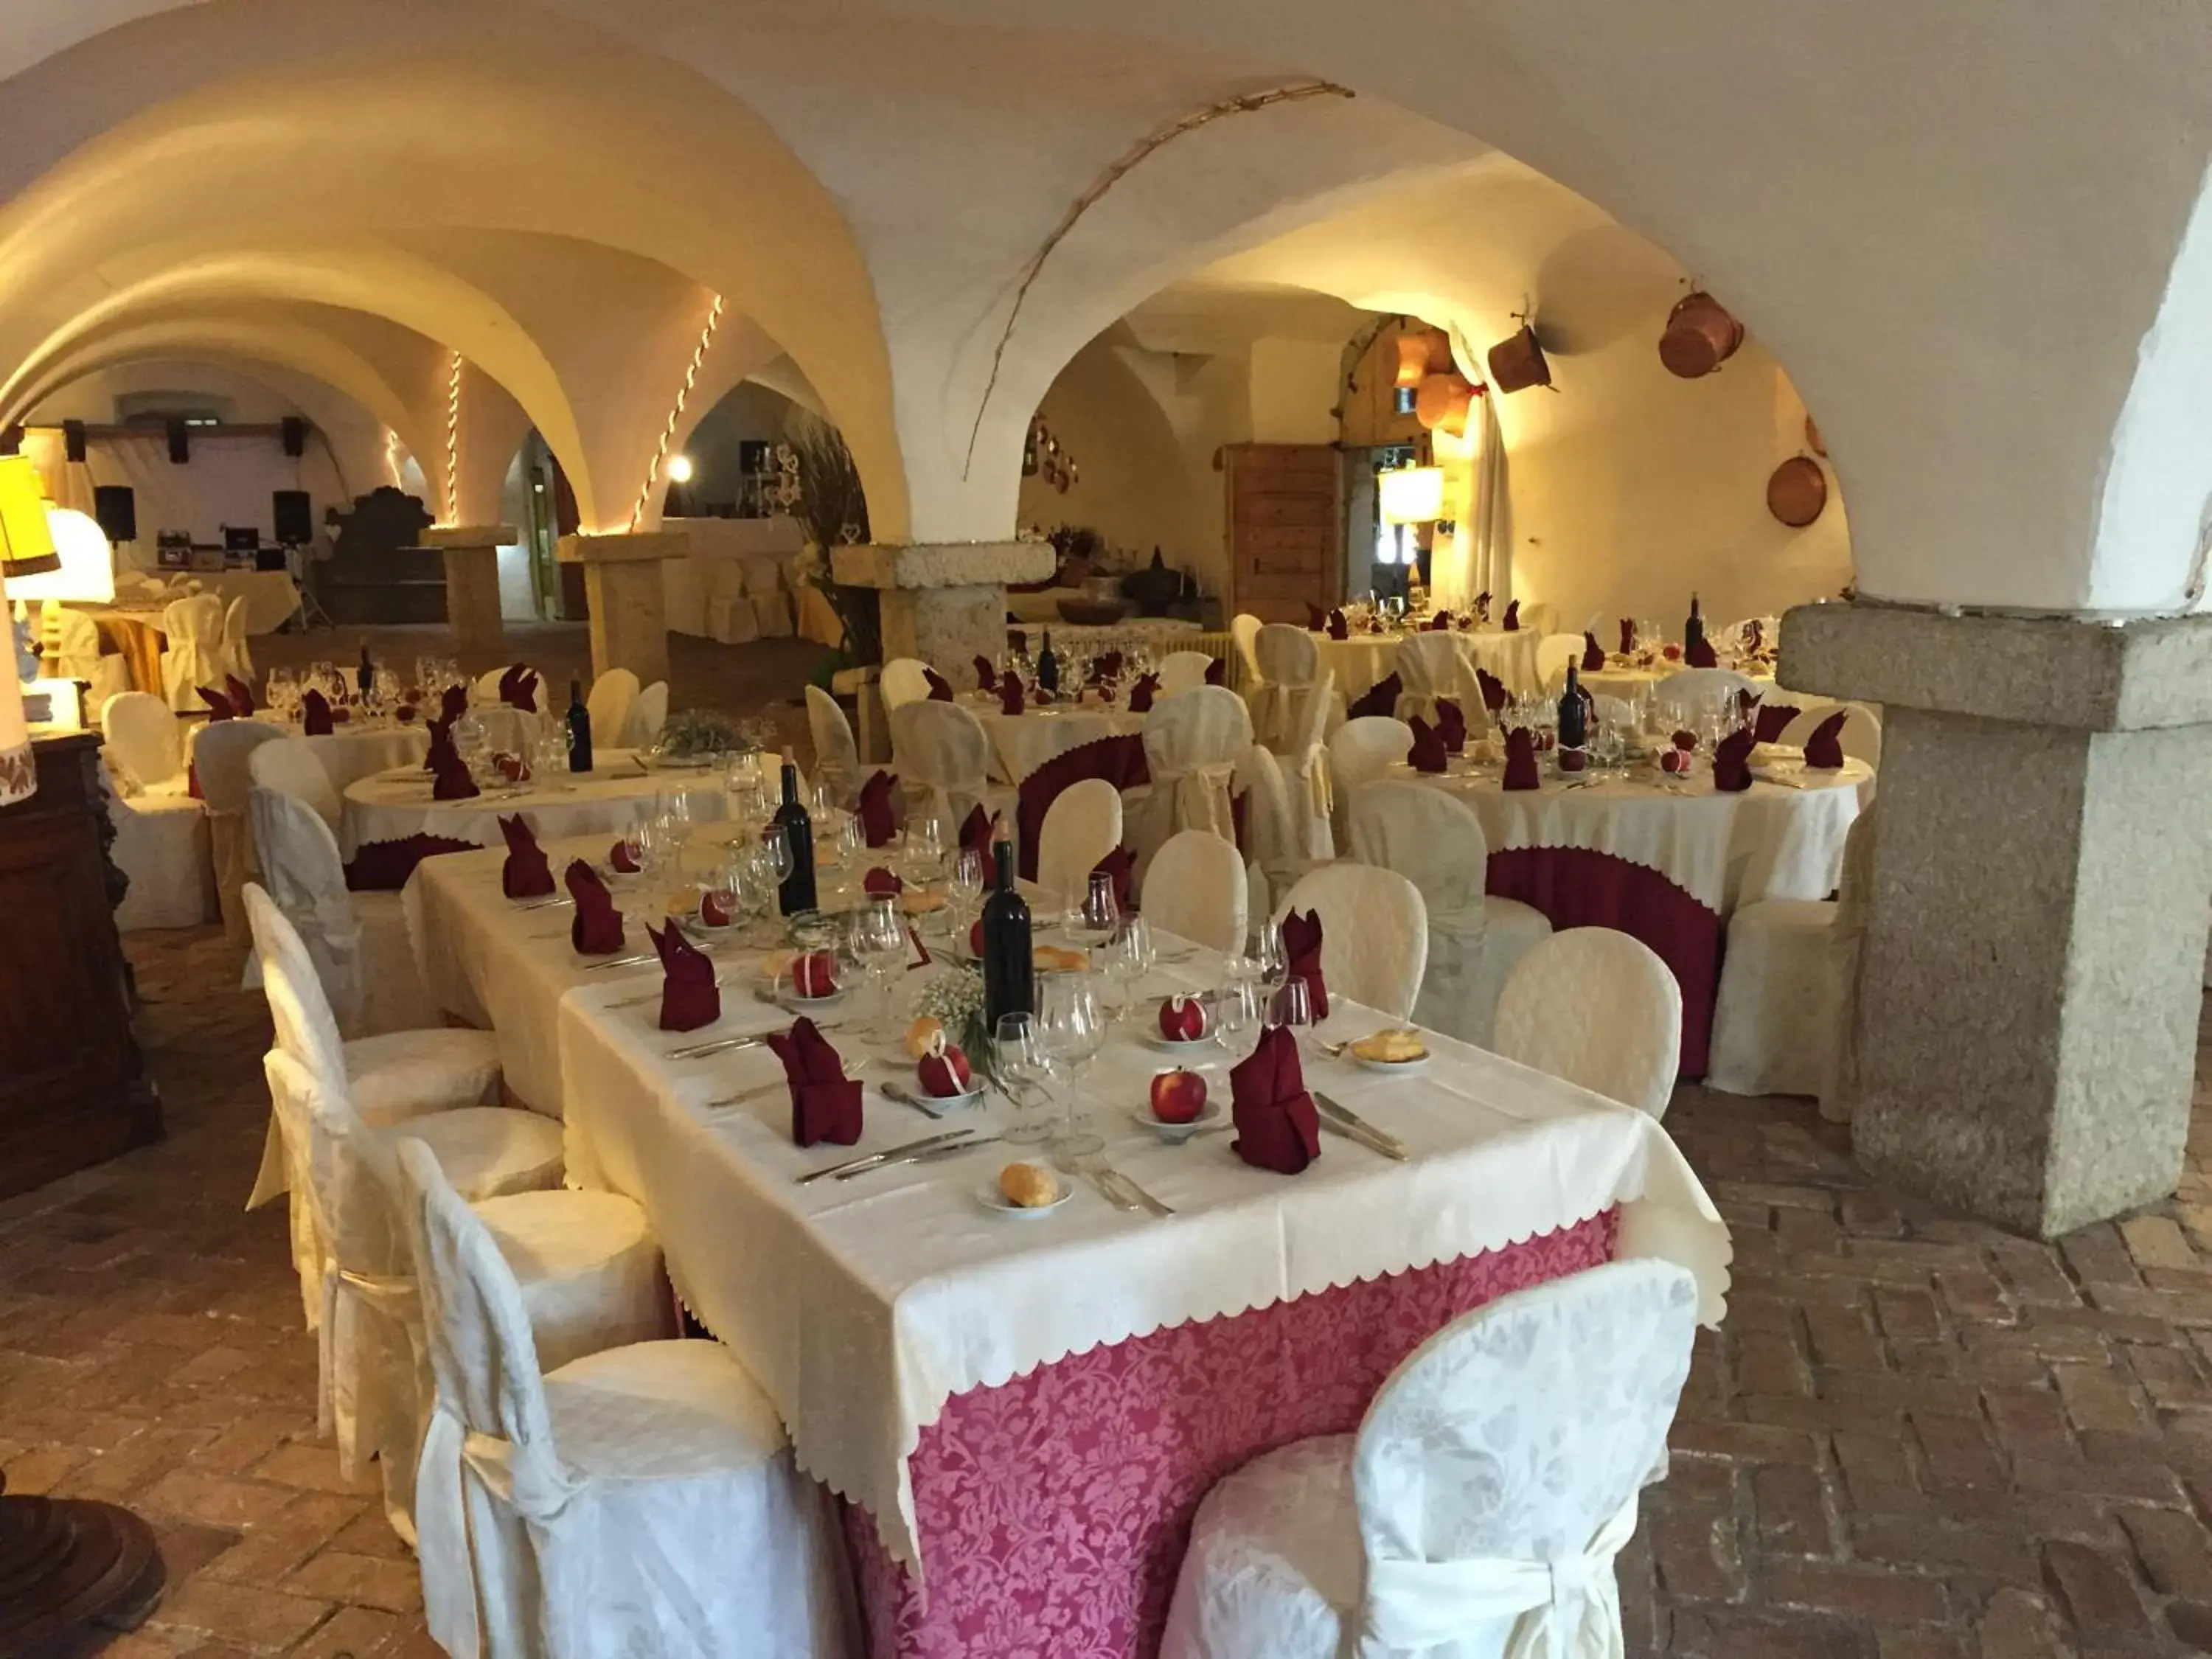 Restaurant/places to eat, Banquet Facilities in Villa Bertagnolli - Locanda Del Bel Sorriso